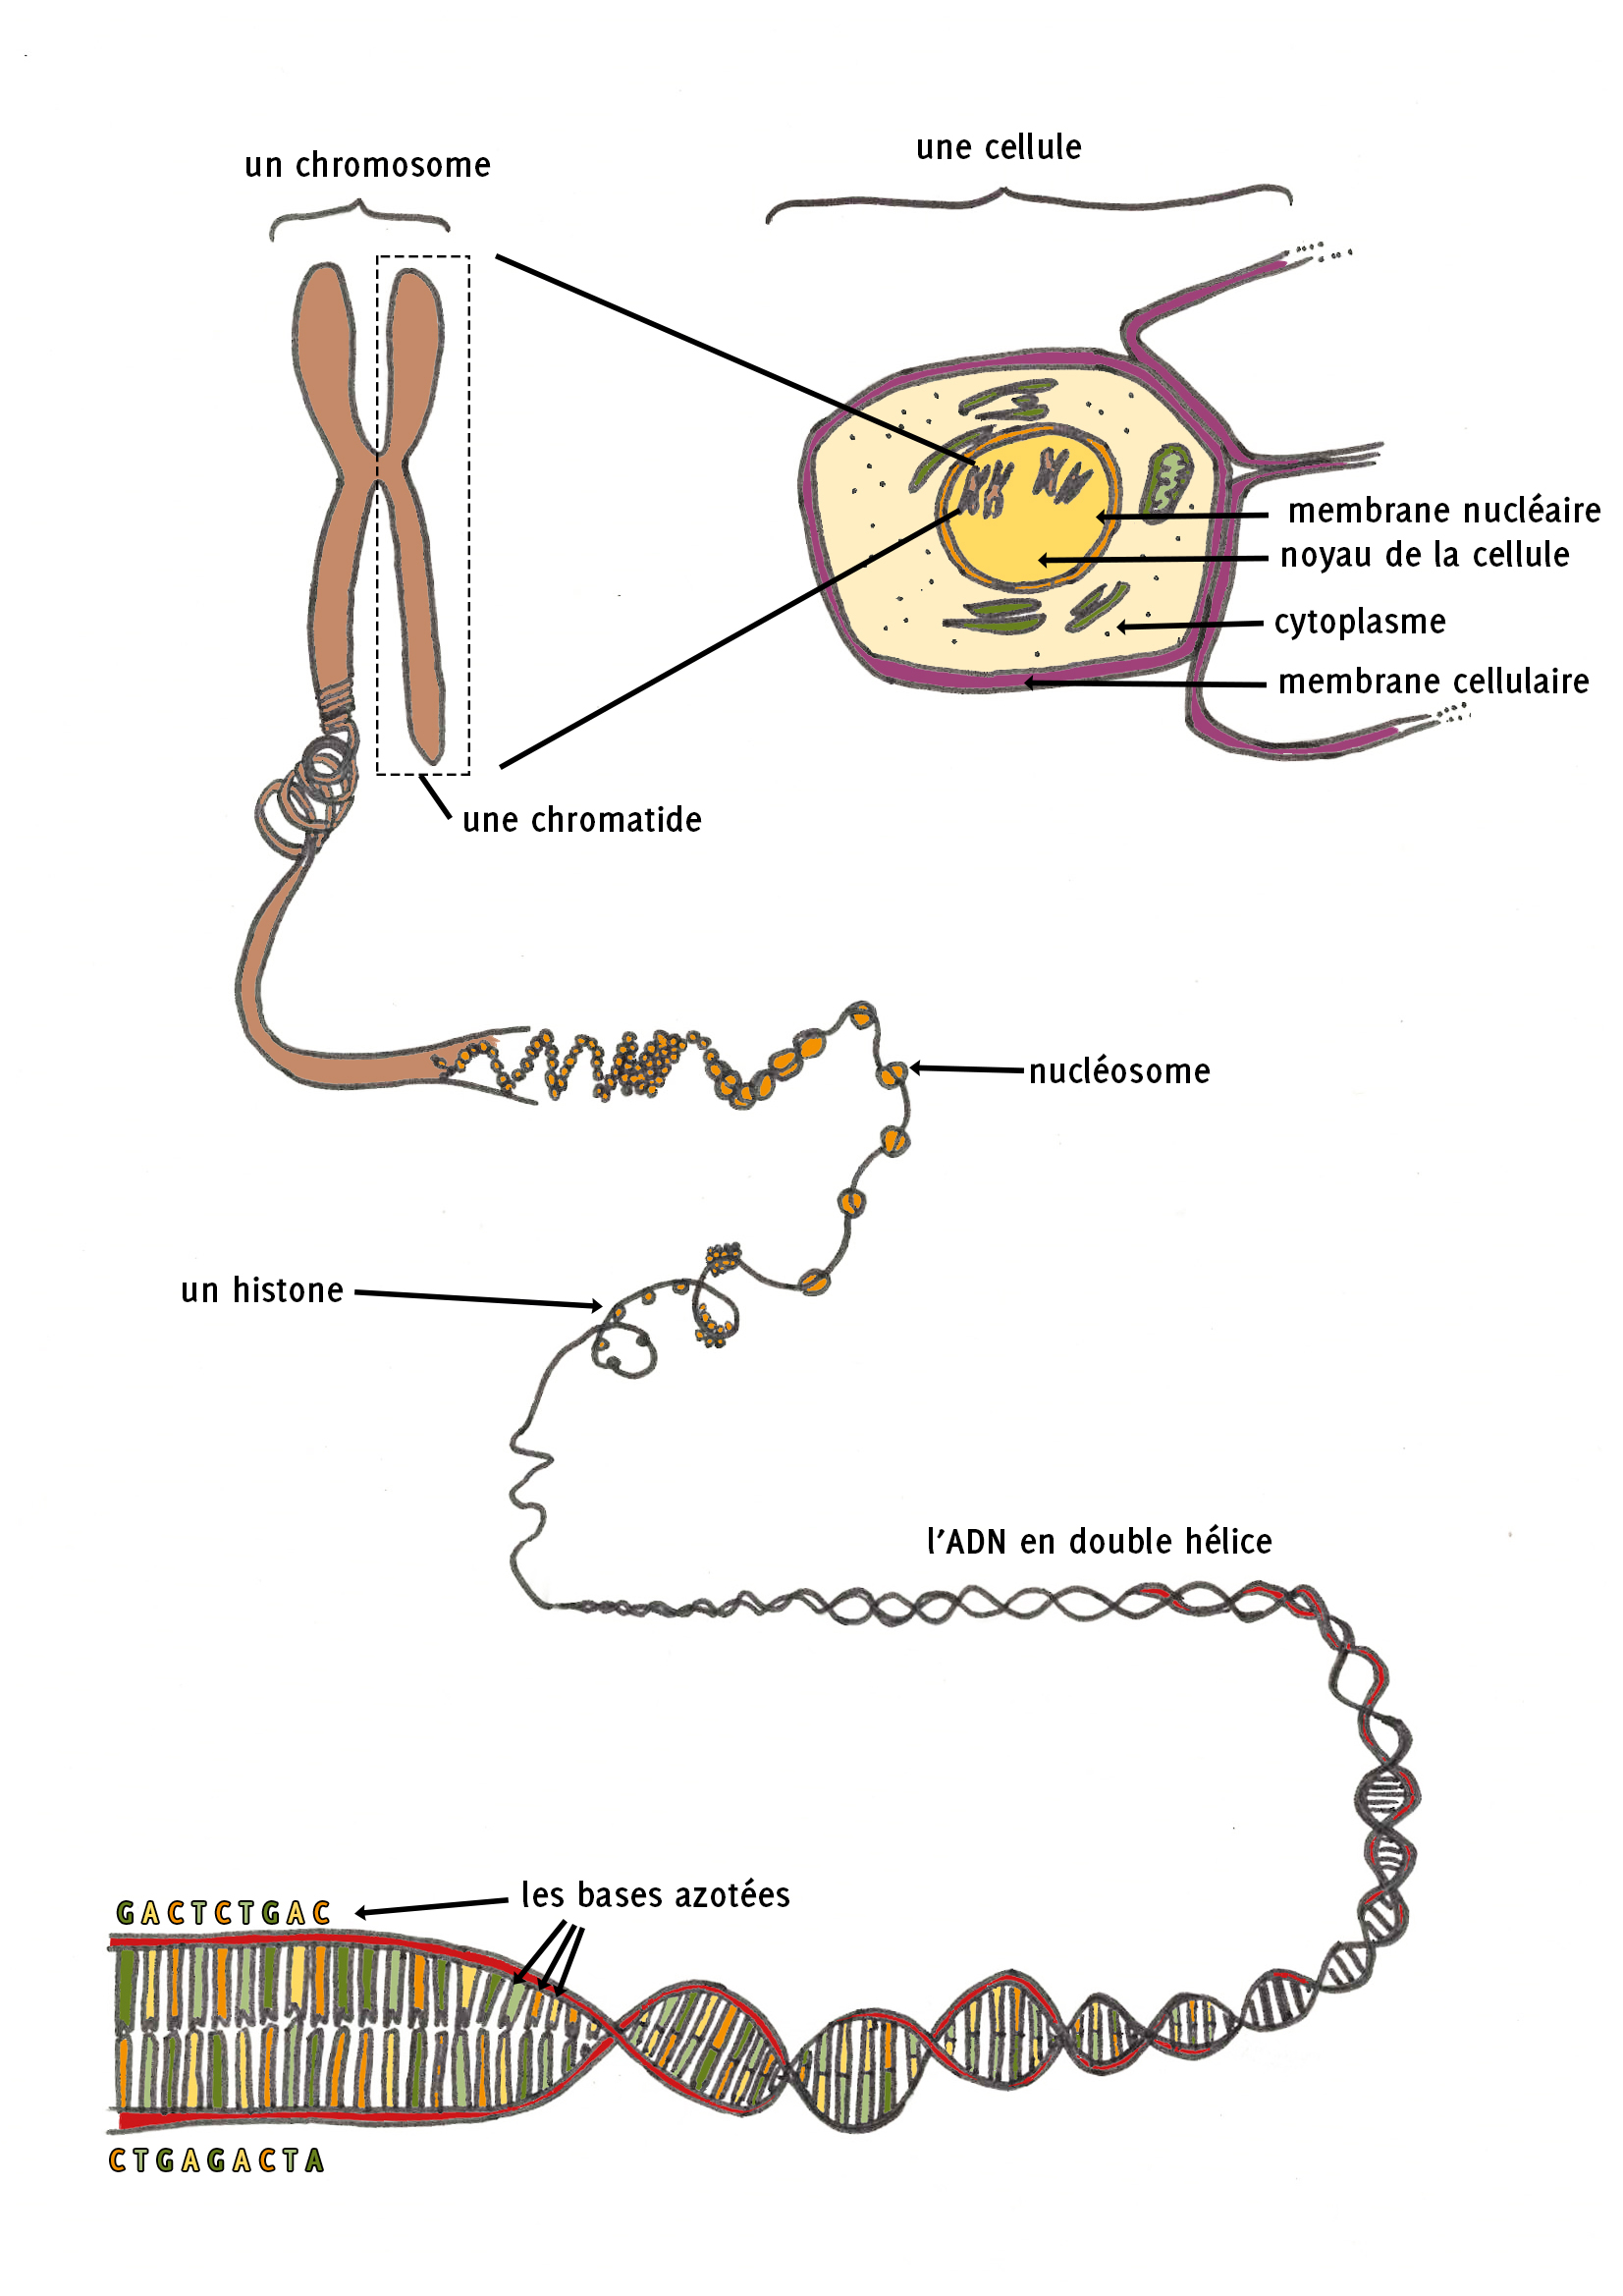 Représentation schématique des différents niveaux d’enroulements et d’organisation de l’ADN dans le noyau de la cellule